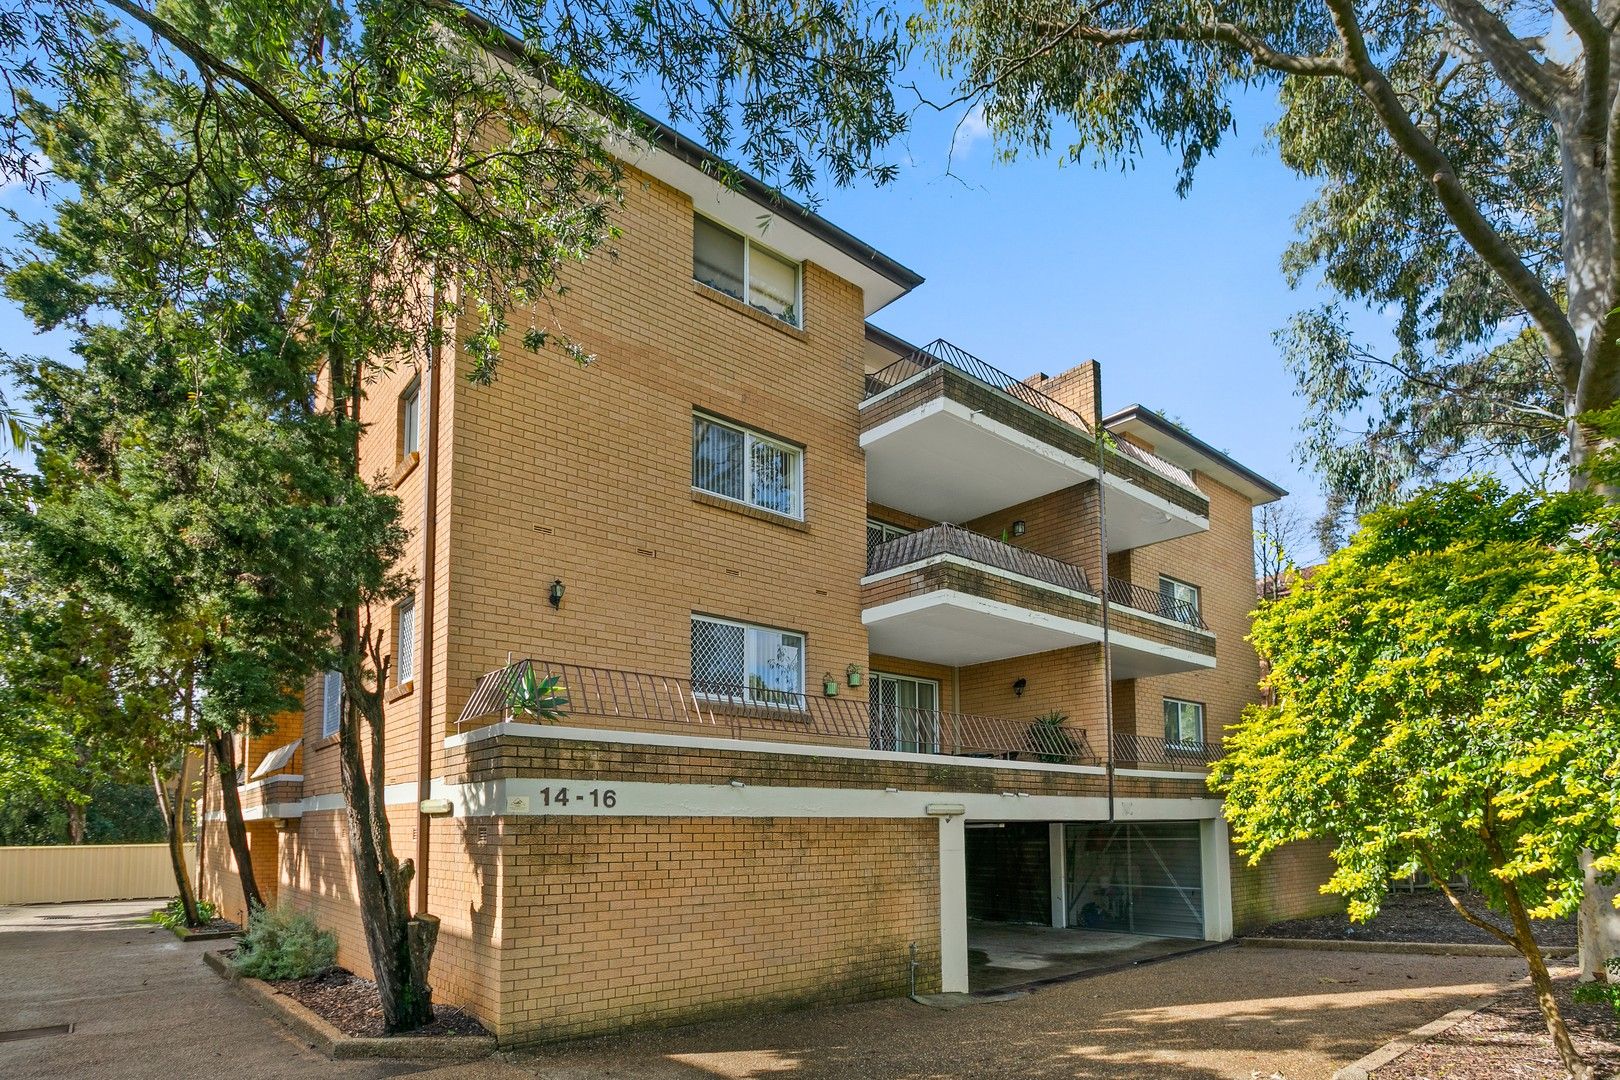 2 bedrooms Apartment / Unit / Flat in 5/14-16 Ocean Street PENSHURST NSW, 2222